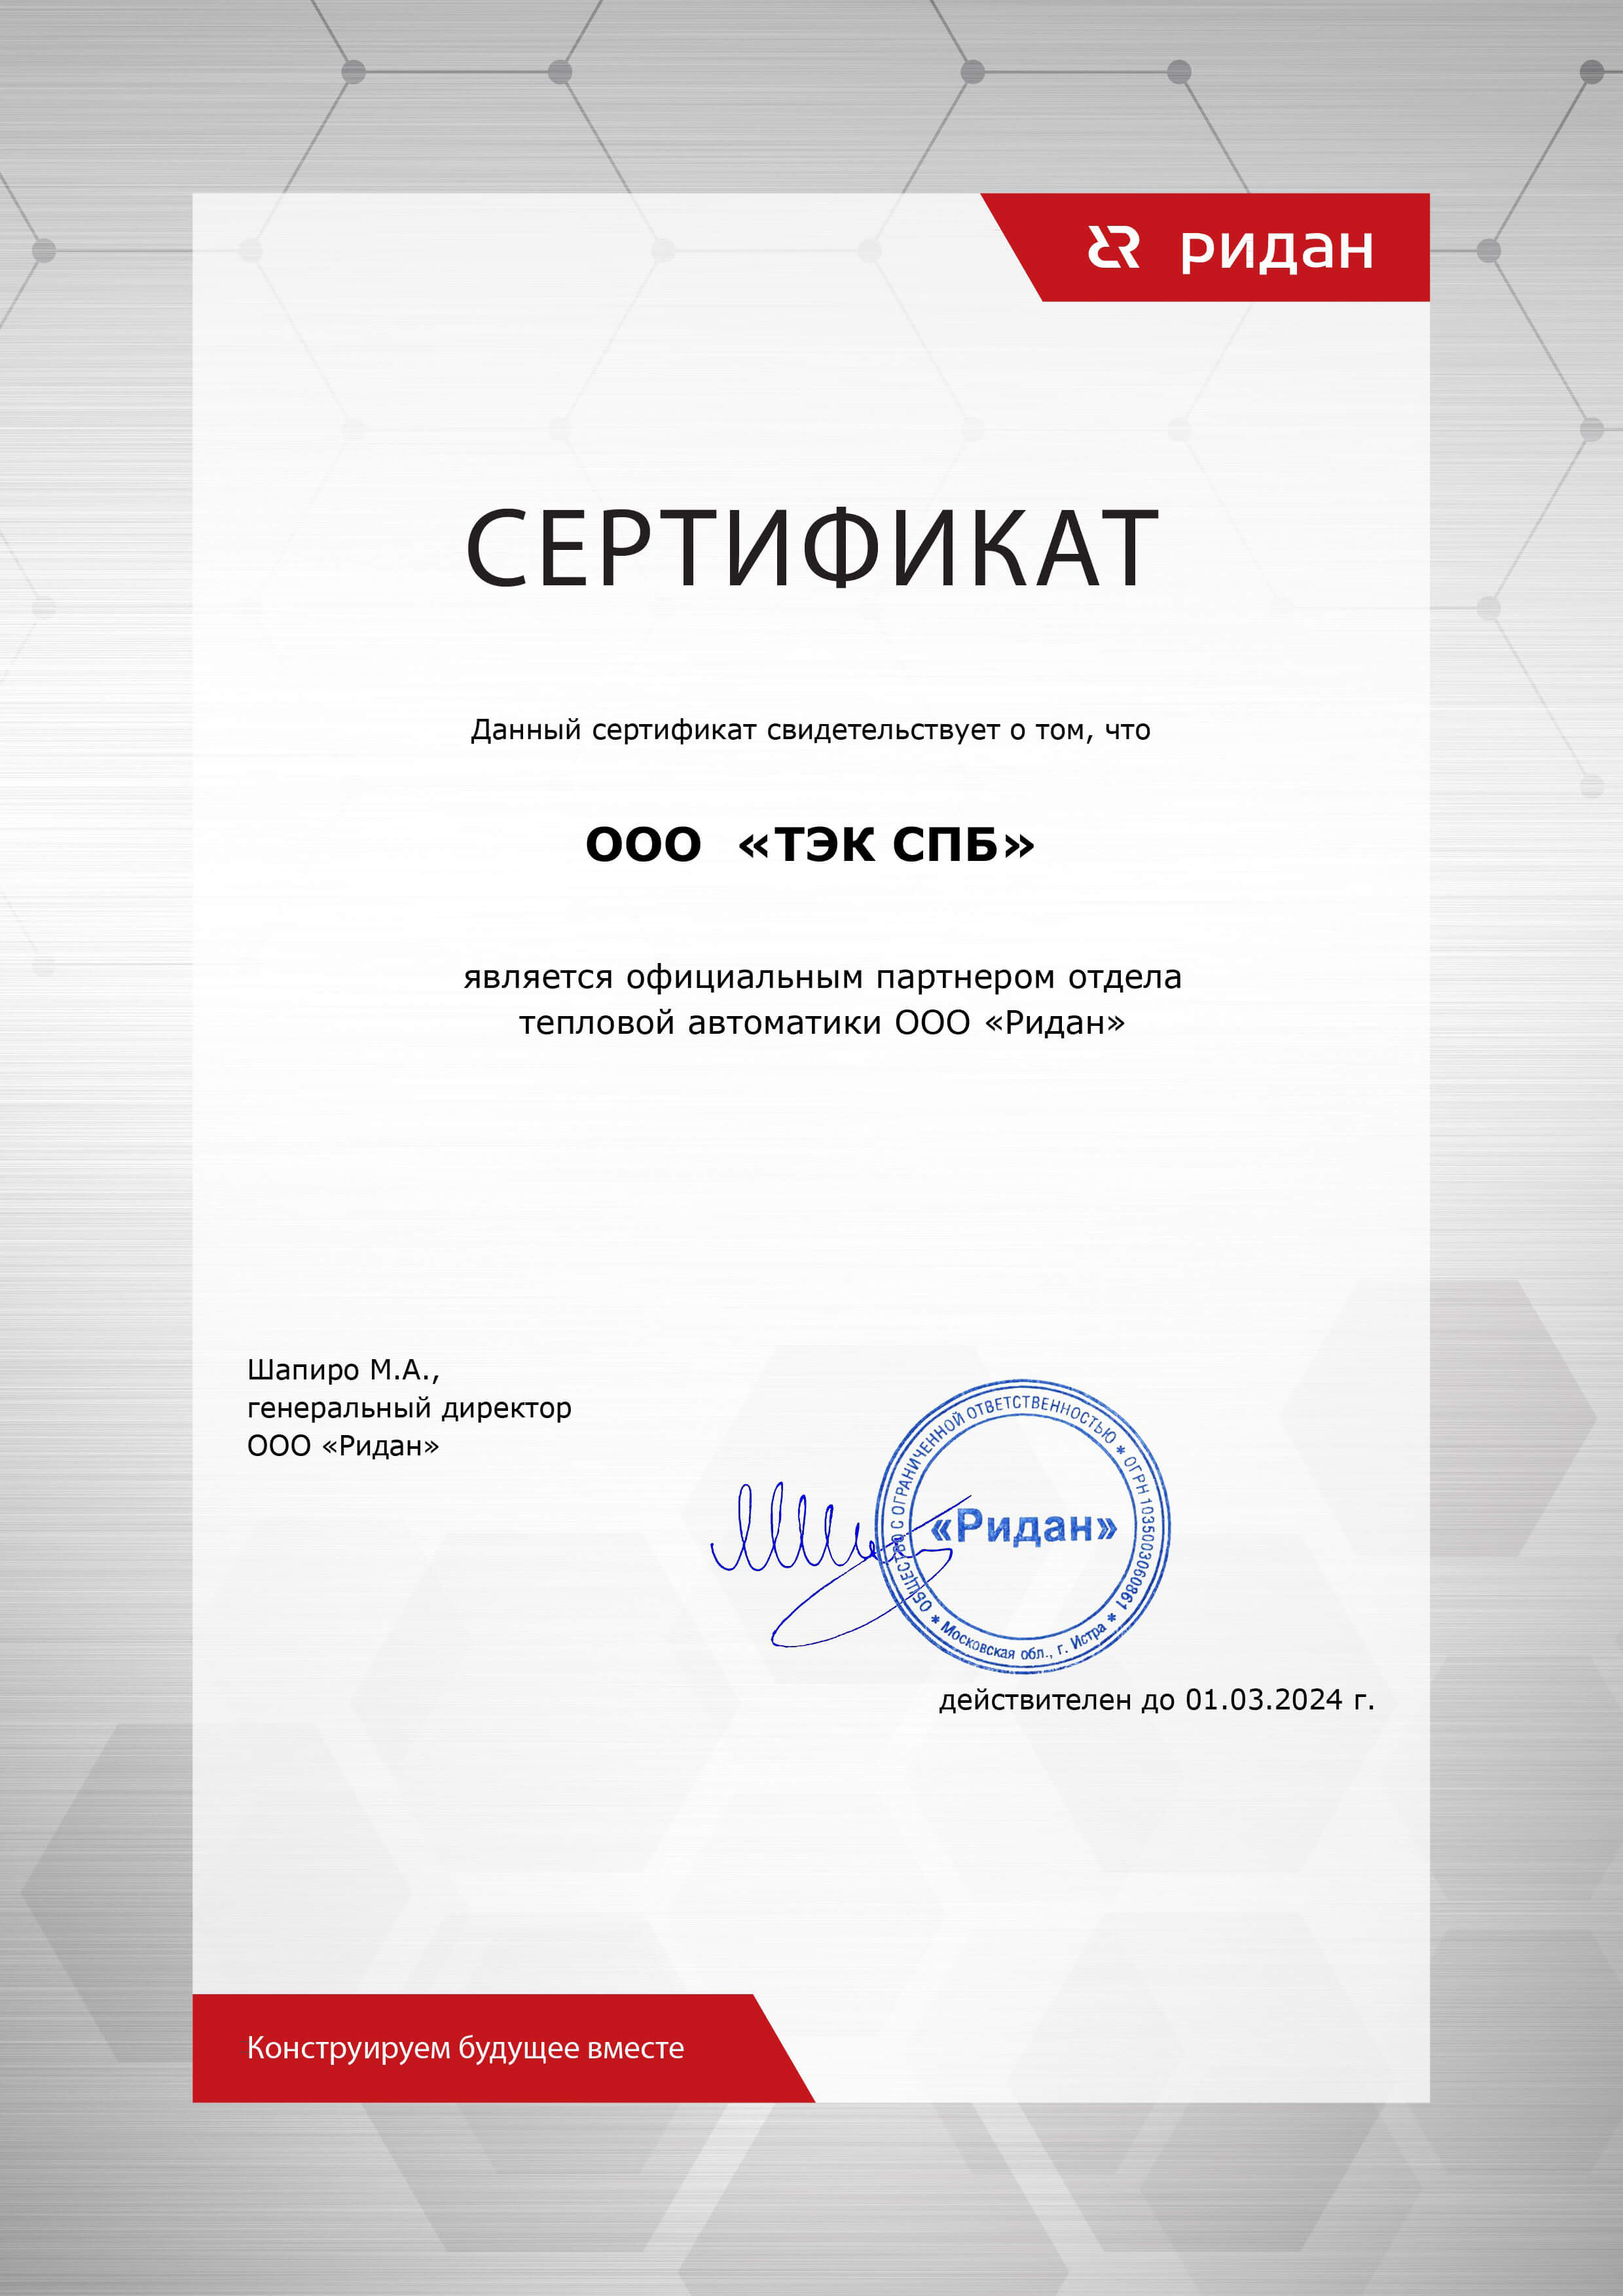 Сертификат партнера фирмы Ридан